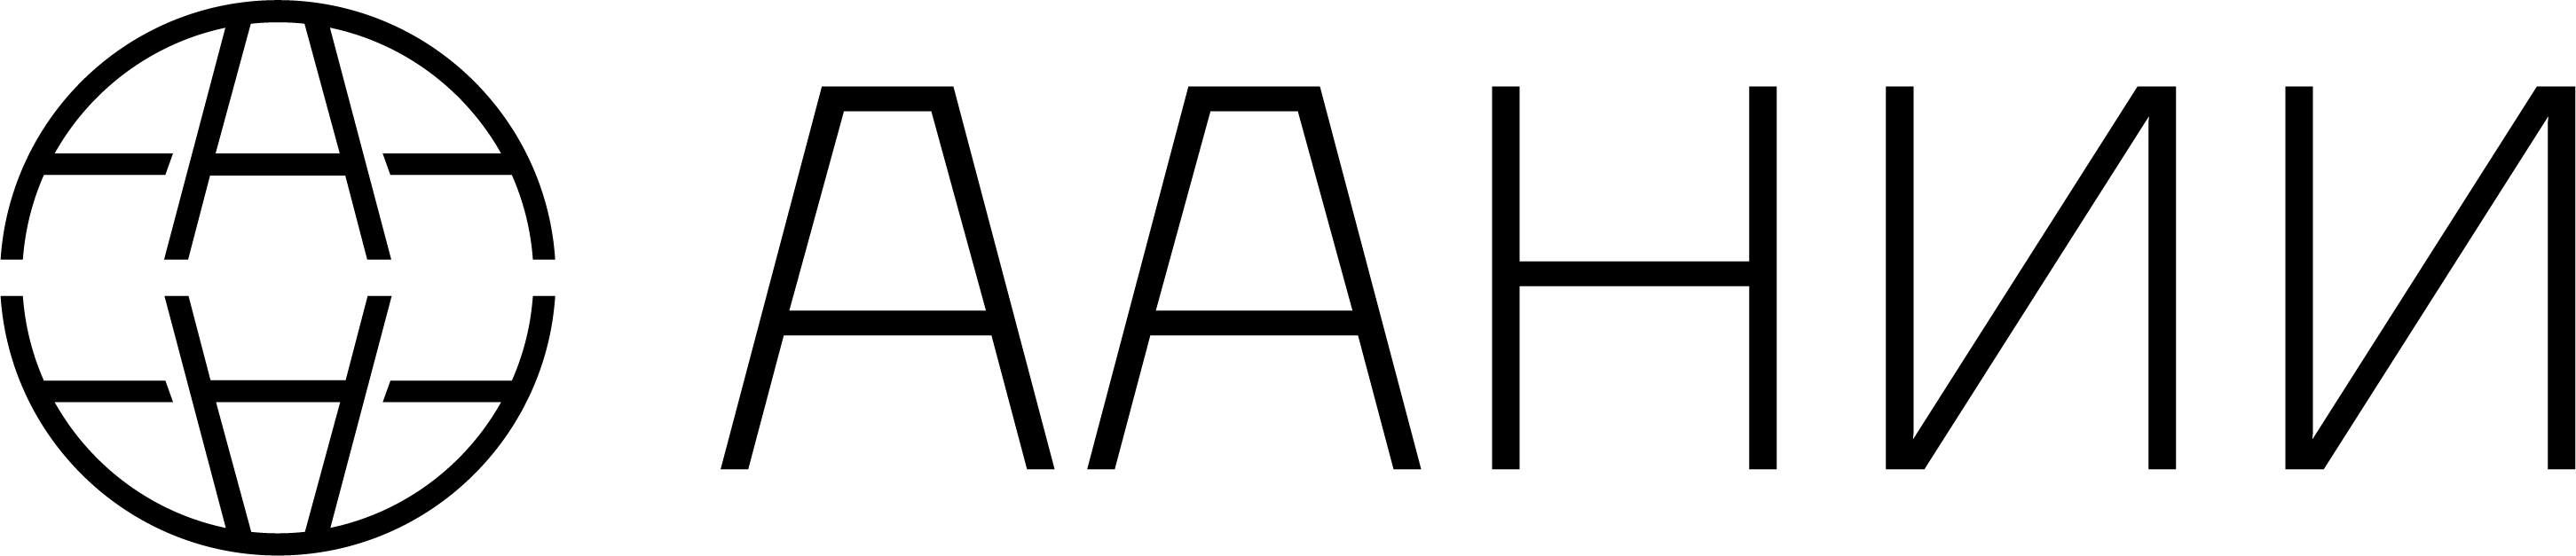 Антарктический научно исследовательский. ААНИИ эмблема. ФГБУ ААНИИ. Арктический и антарктический научно-исследовательский институт. Институт Арктики и Антарктики логотип.